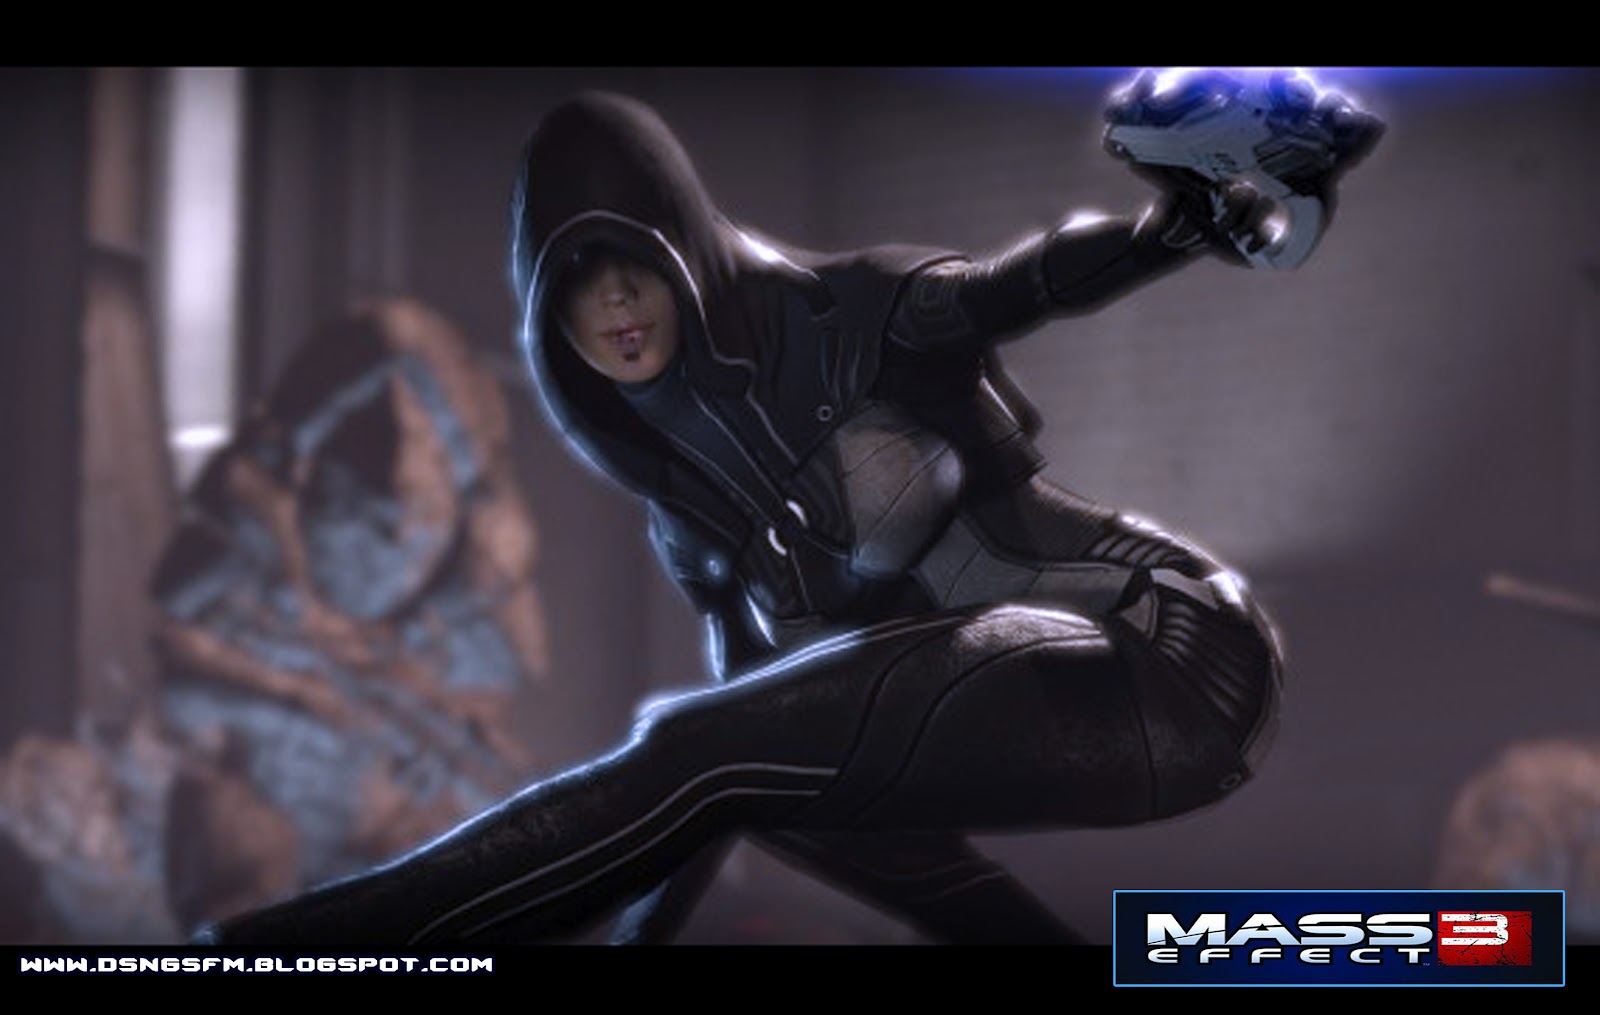 Mass Effect Kasumi Wallpaper Dlc Female Assassin Ninja Space